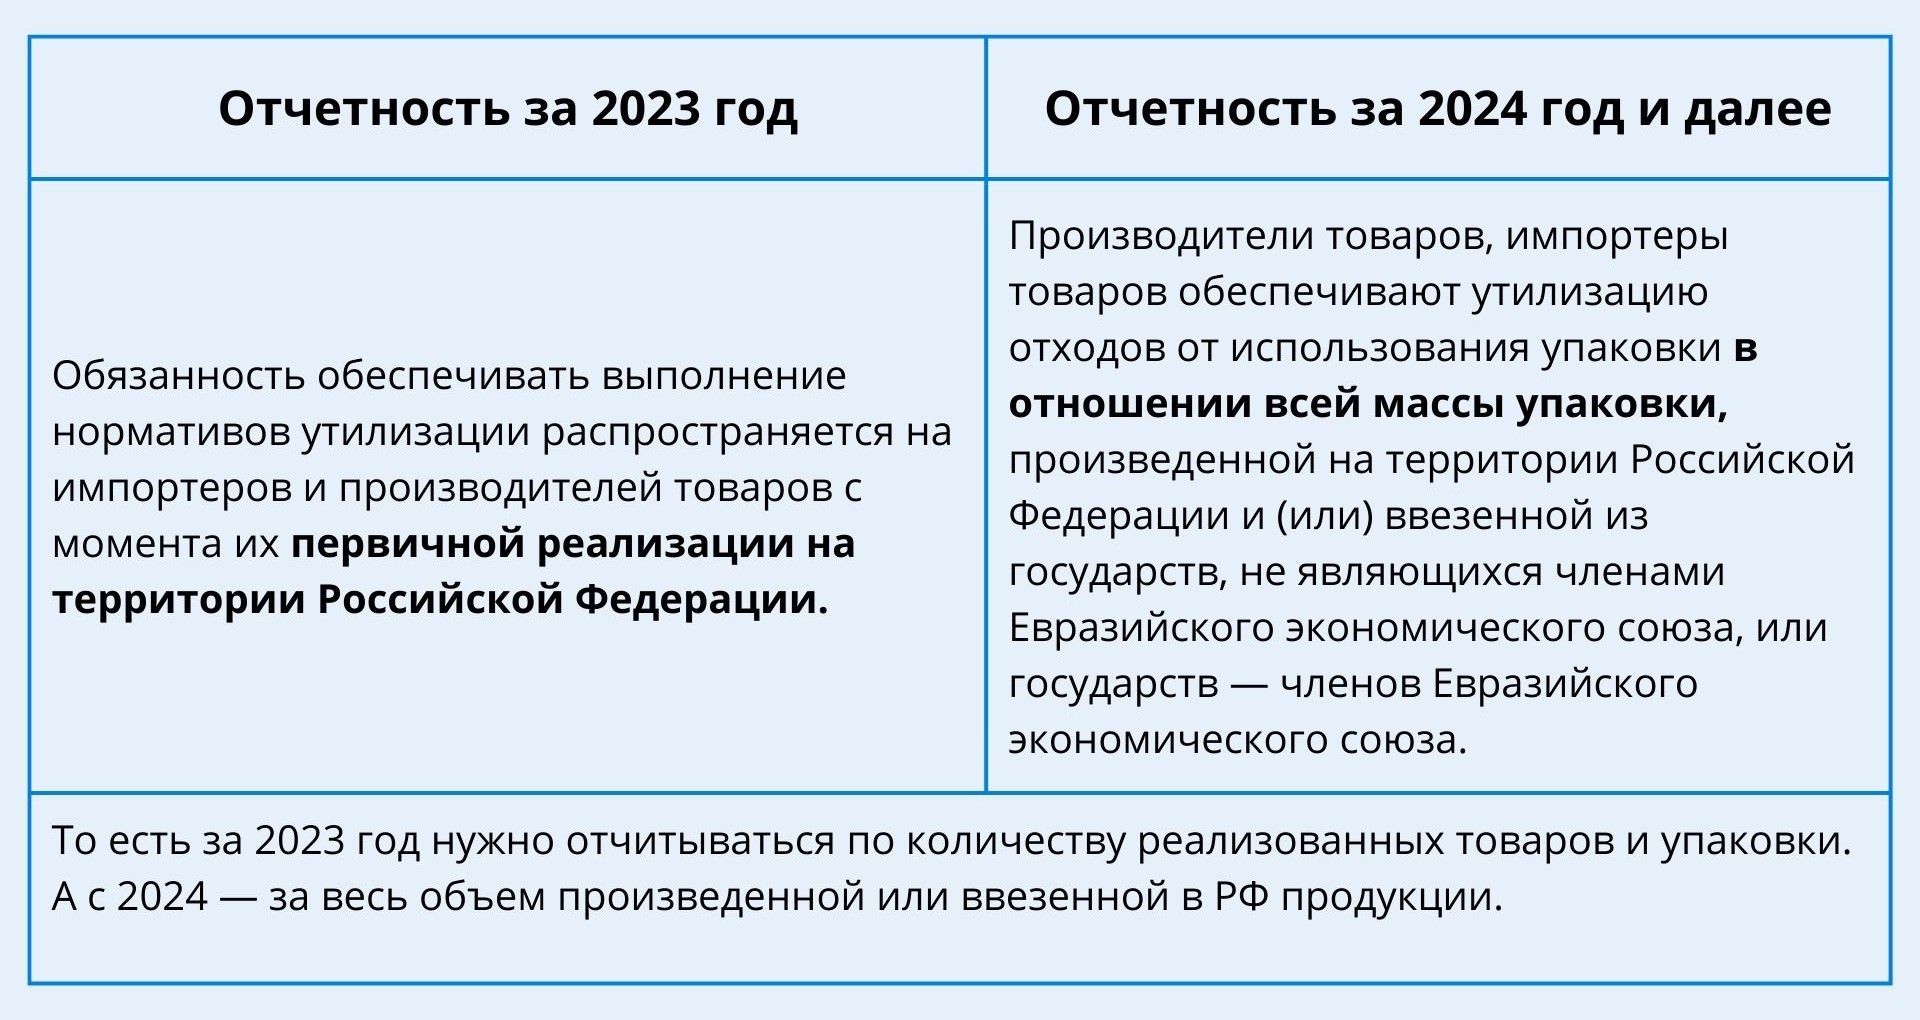 Изменения для бизнеса с 1 января 2024 года